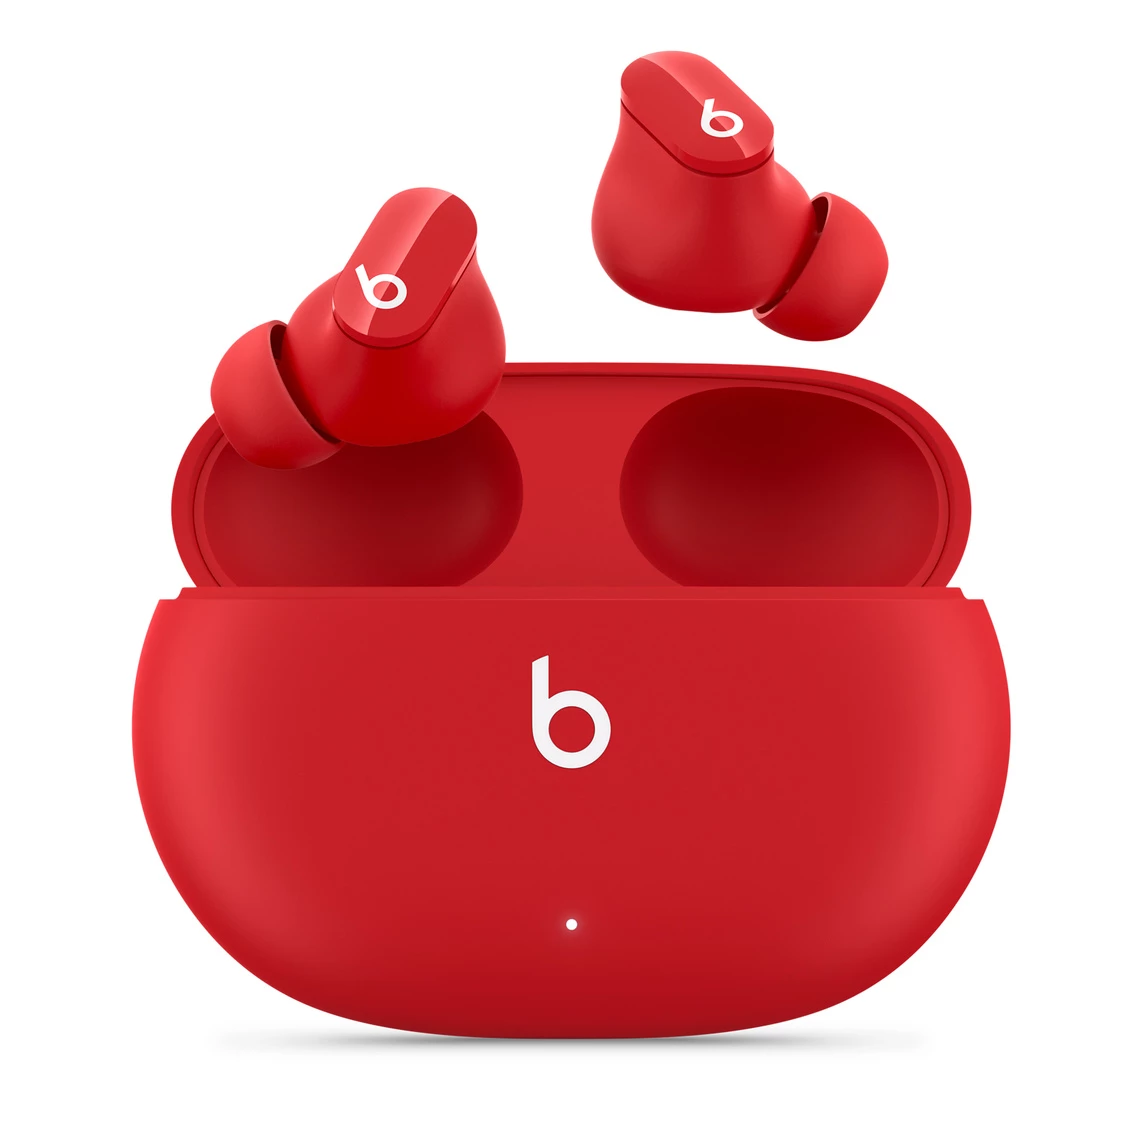 Наушники Beats Studio Buds True Wireless Noise Cancelling Earphones - Beats Red (MJ503)